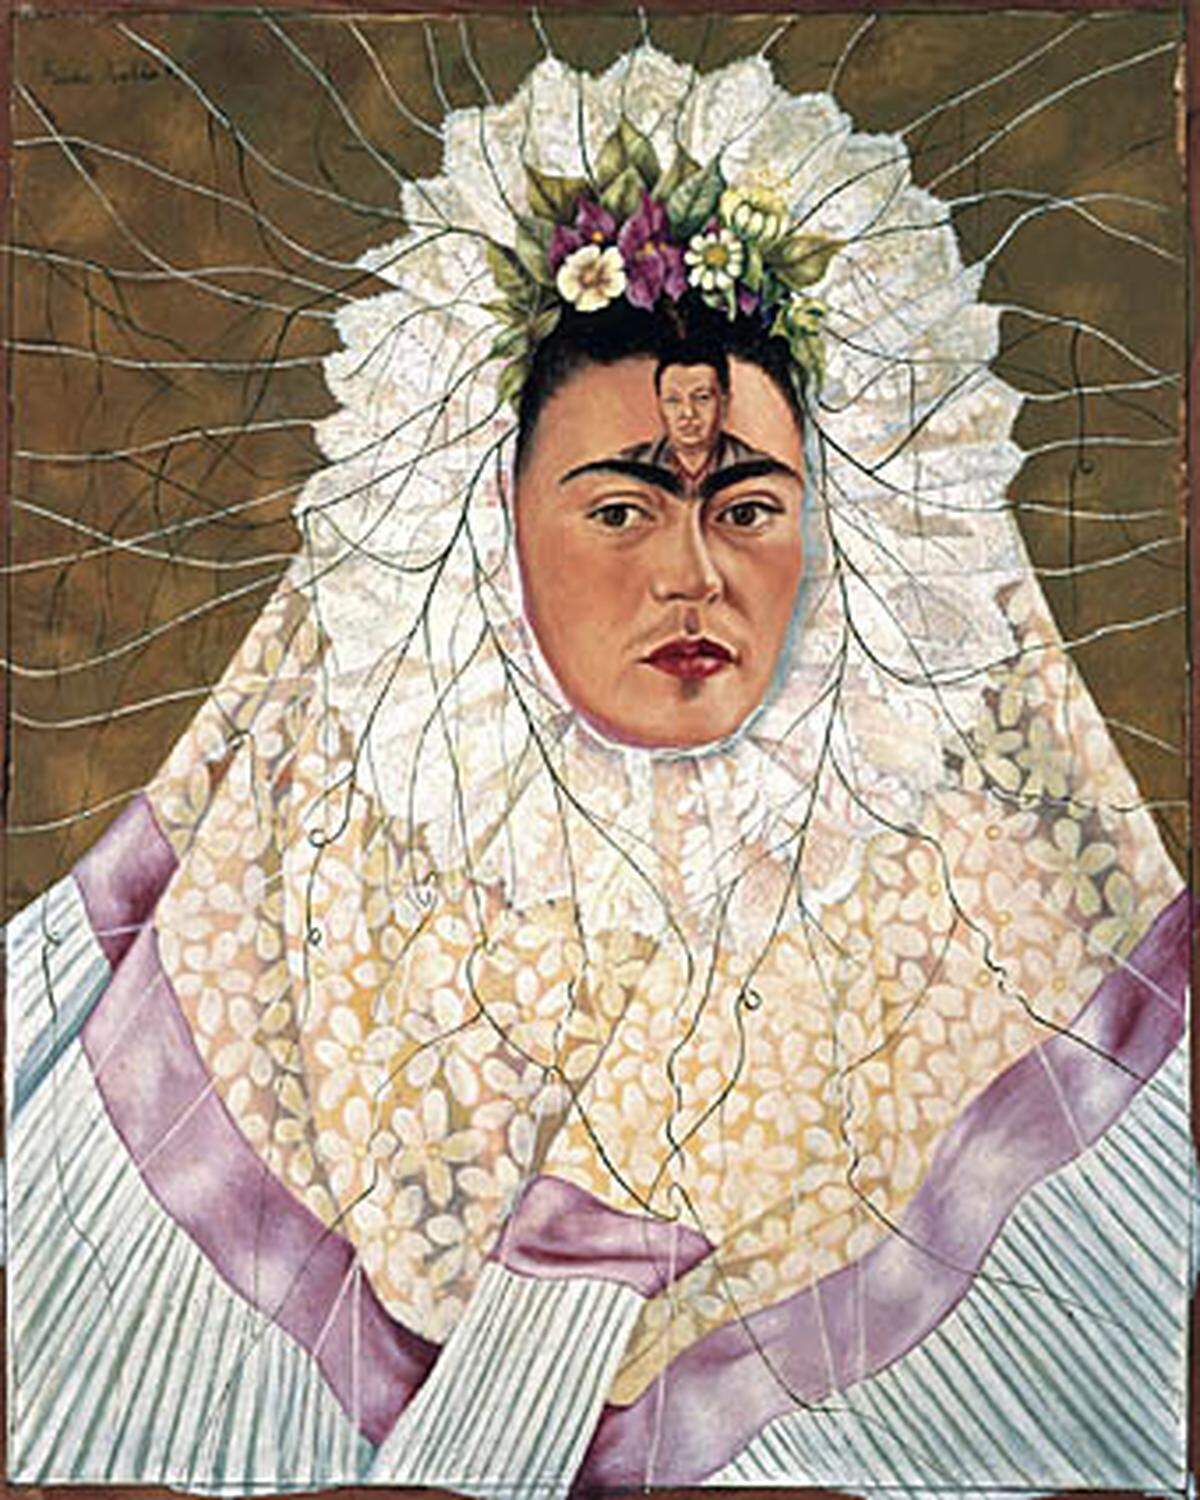 Wesentlichen Einfluss auf das Schaffen von Kahlo hatte ihr Ehemann Diego Rivera, den sie 1929 heiratete. Die Ehe mit dem um 21 Jahre älteren Maler kann getrost als turbulent bezeichnet werden.  Frida Kahlo: Selbstbildnis als Tehuana oder Diego in meinen Gedanken (Autorretrato como Tehuana o Diego en mi pensiamento), 1943  The Jacques and Natasha Gelman Collection of 20th Century Mexican Art and The Vergel Foundation 